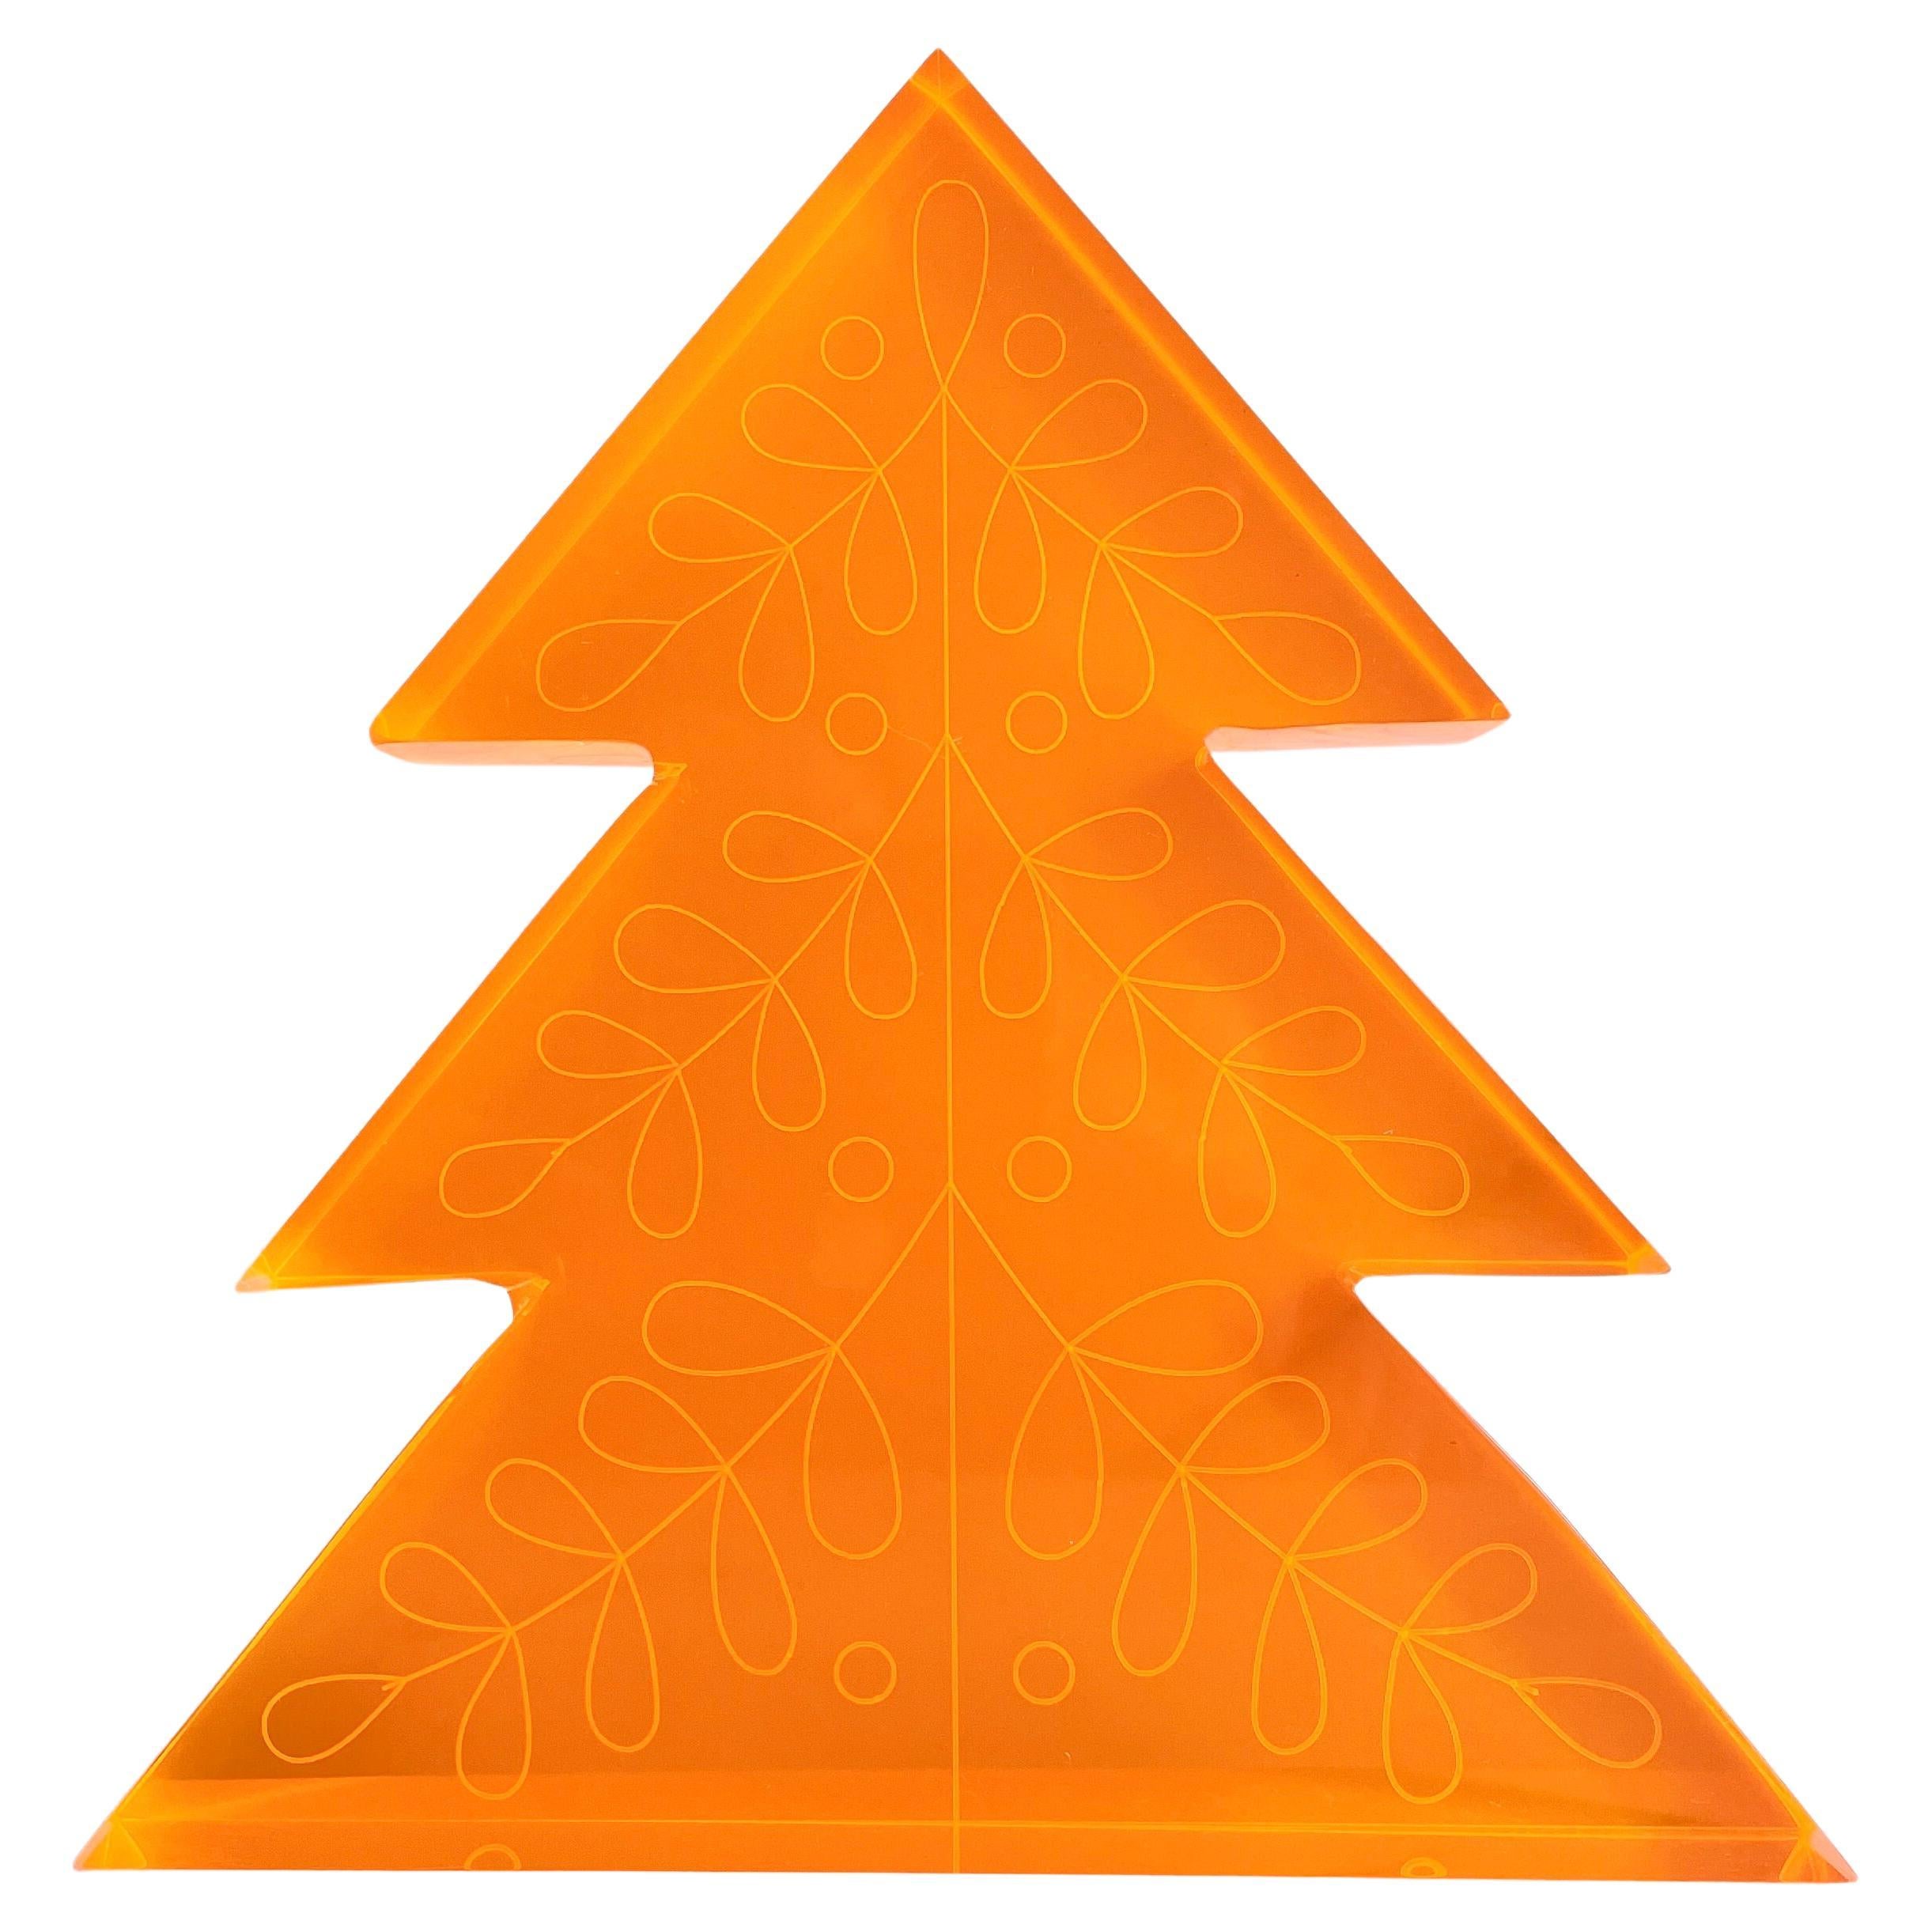 Neonfarbener orangefarbener Acryl- Weihnachtsbaum-Dekor von Paola Valle